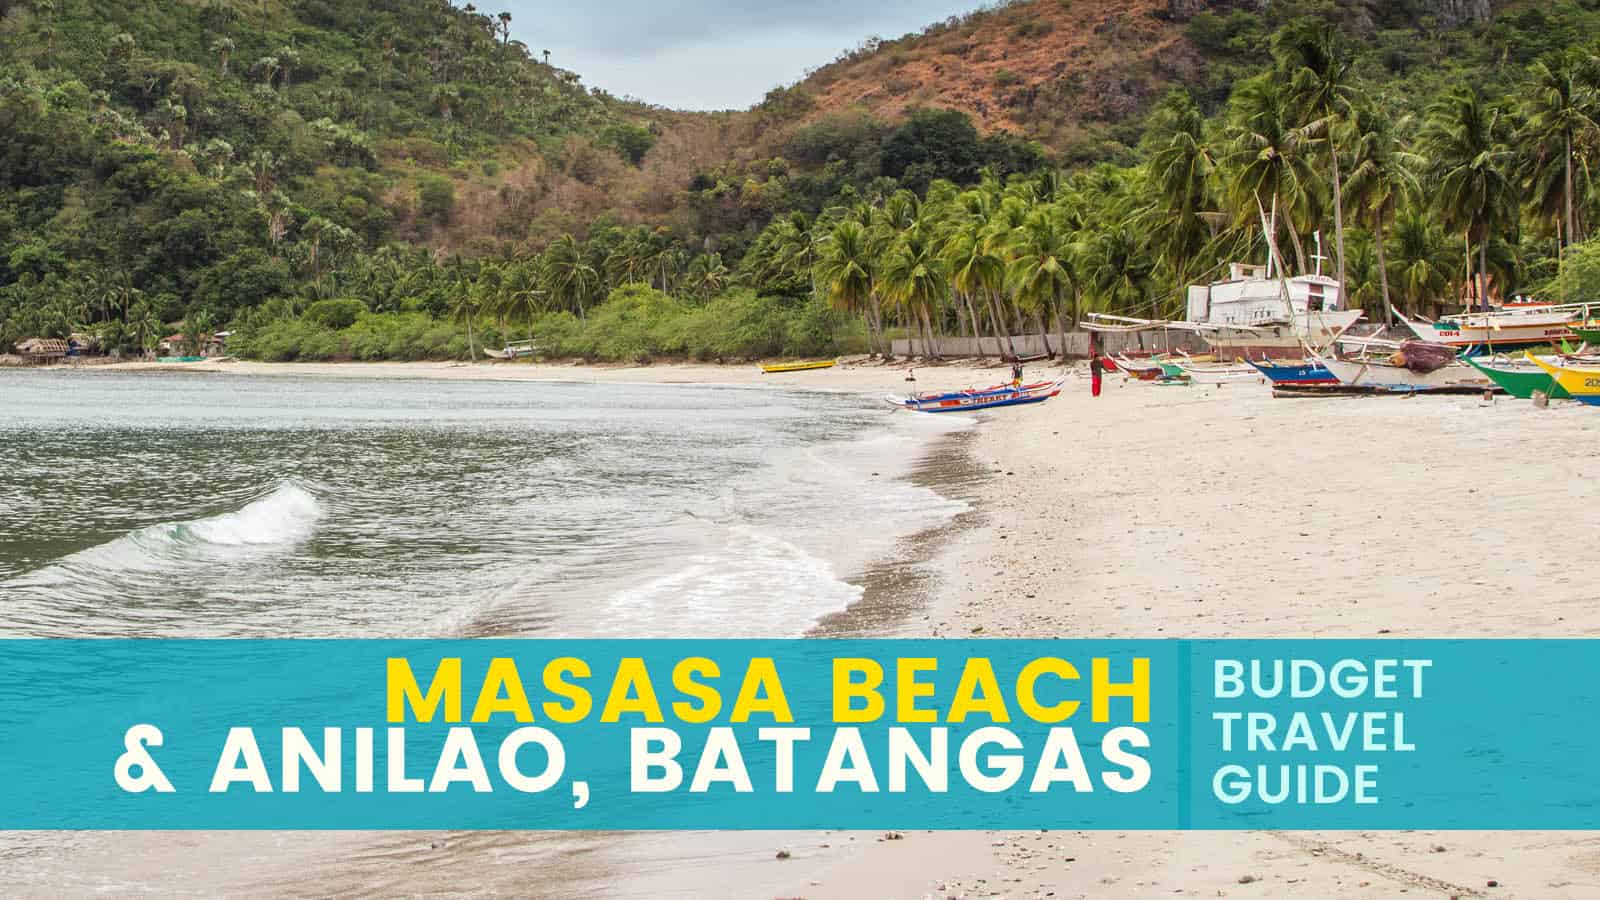 Masasa海滩和Anilao:旅游指南